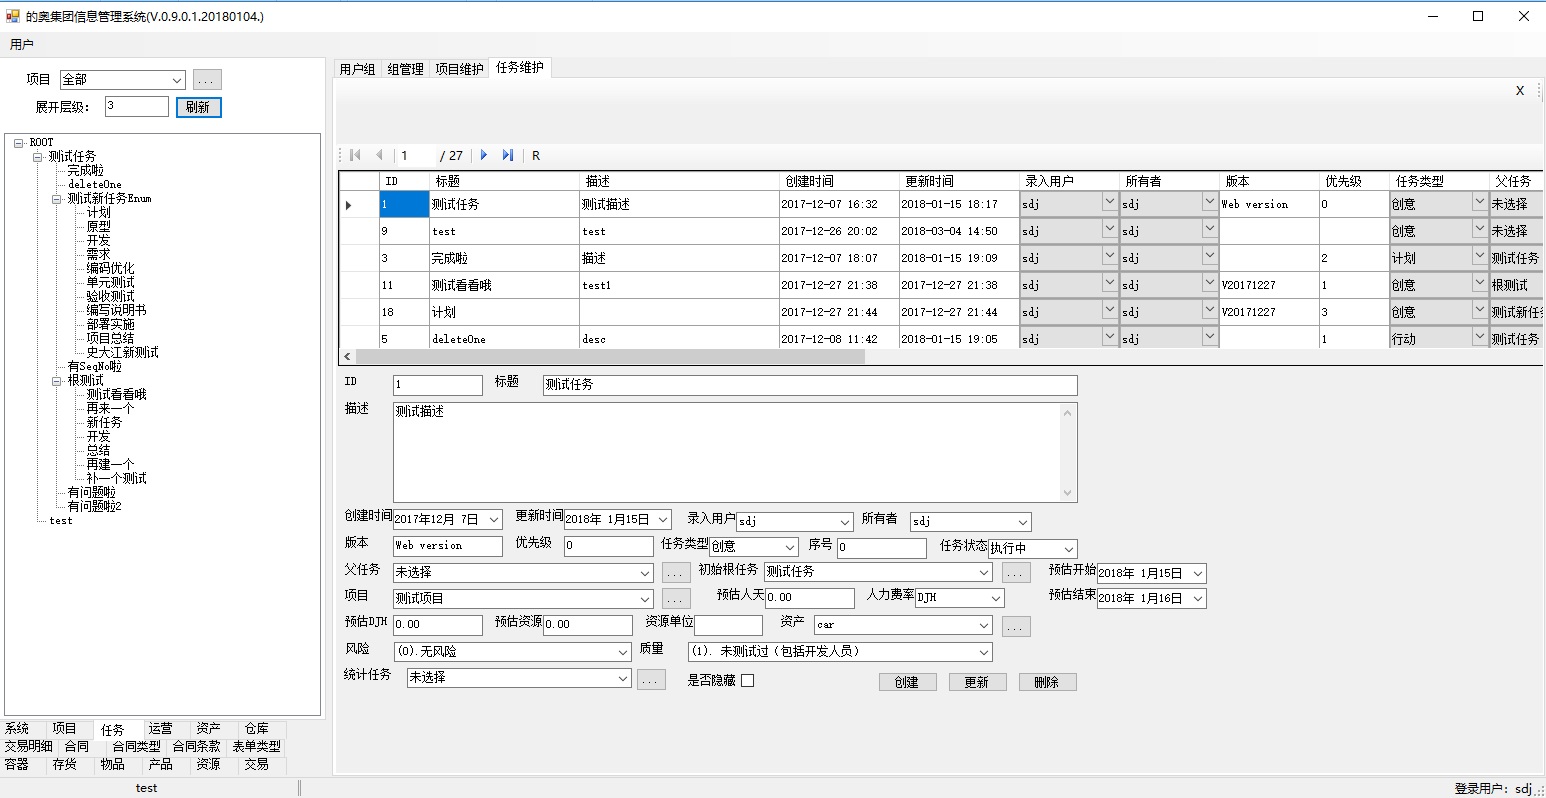 上海邑泊項目管理軟件任務管理支持多種結構的任務分解，除了父子樹形結構外，還支持網狀任務結構關系。任務管理軟件包括優先級、任務類型、狀態、所屬項目、成本、風險等方面的管理。